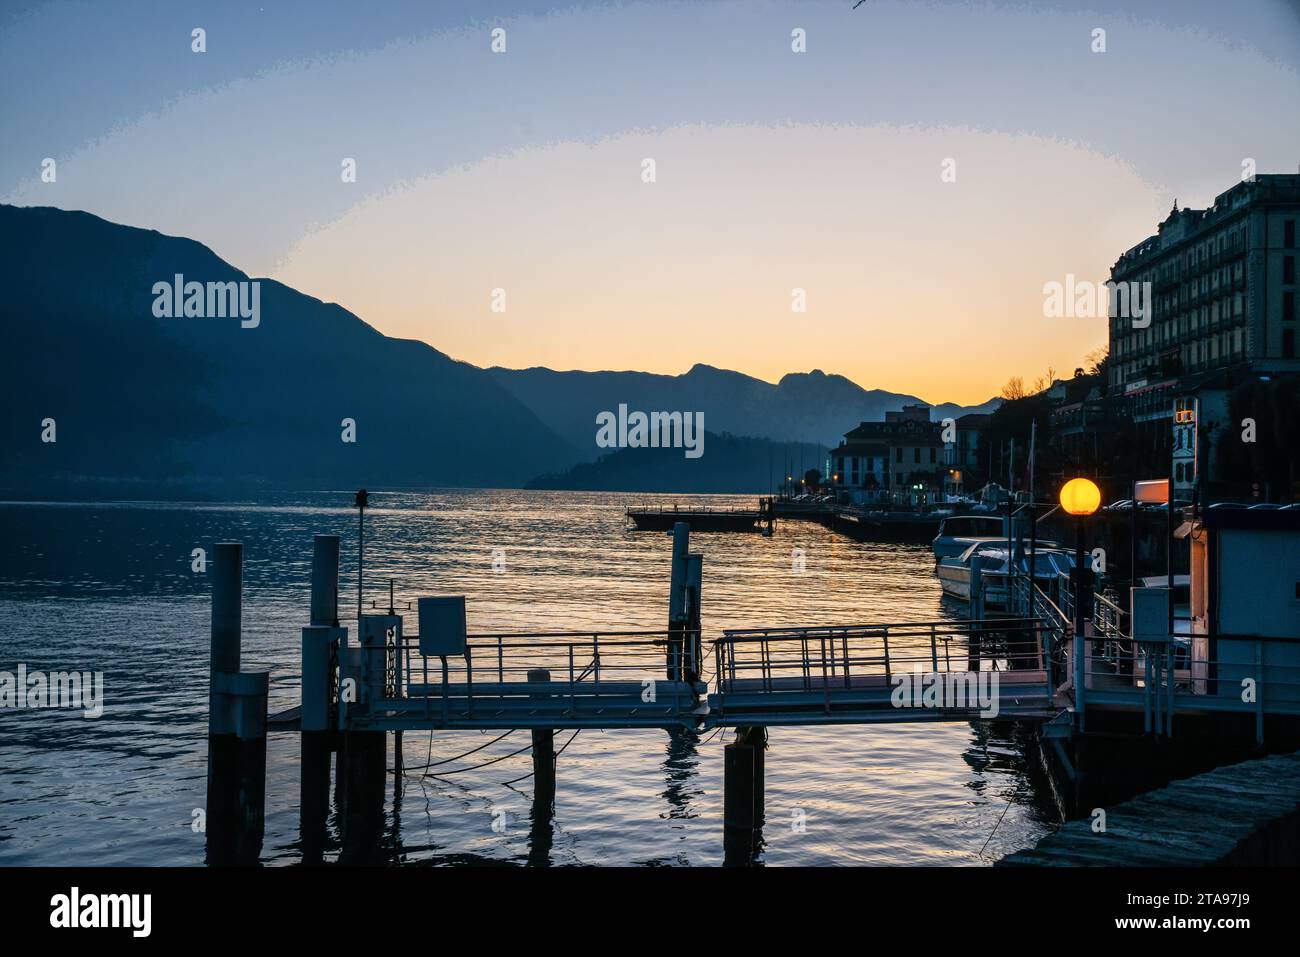 La vista serale del tramonto sul lago di Como e alcune barche attraccano e gli edifici della costa (hotel?). Il molo e la luce elettrica. Breve viaggio a Natale Foto Stock